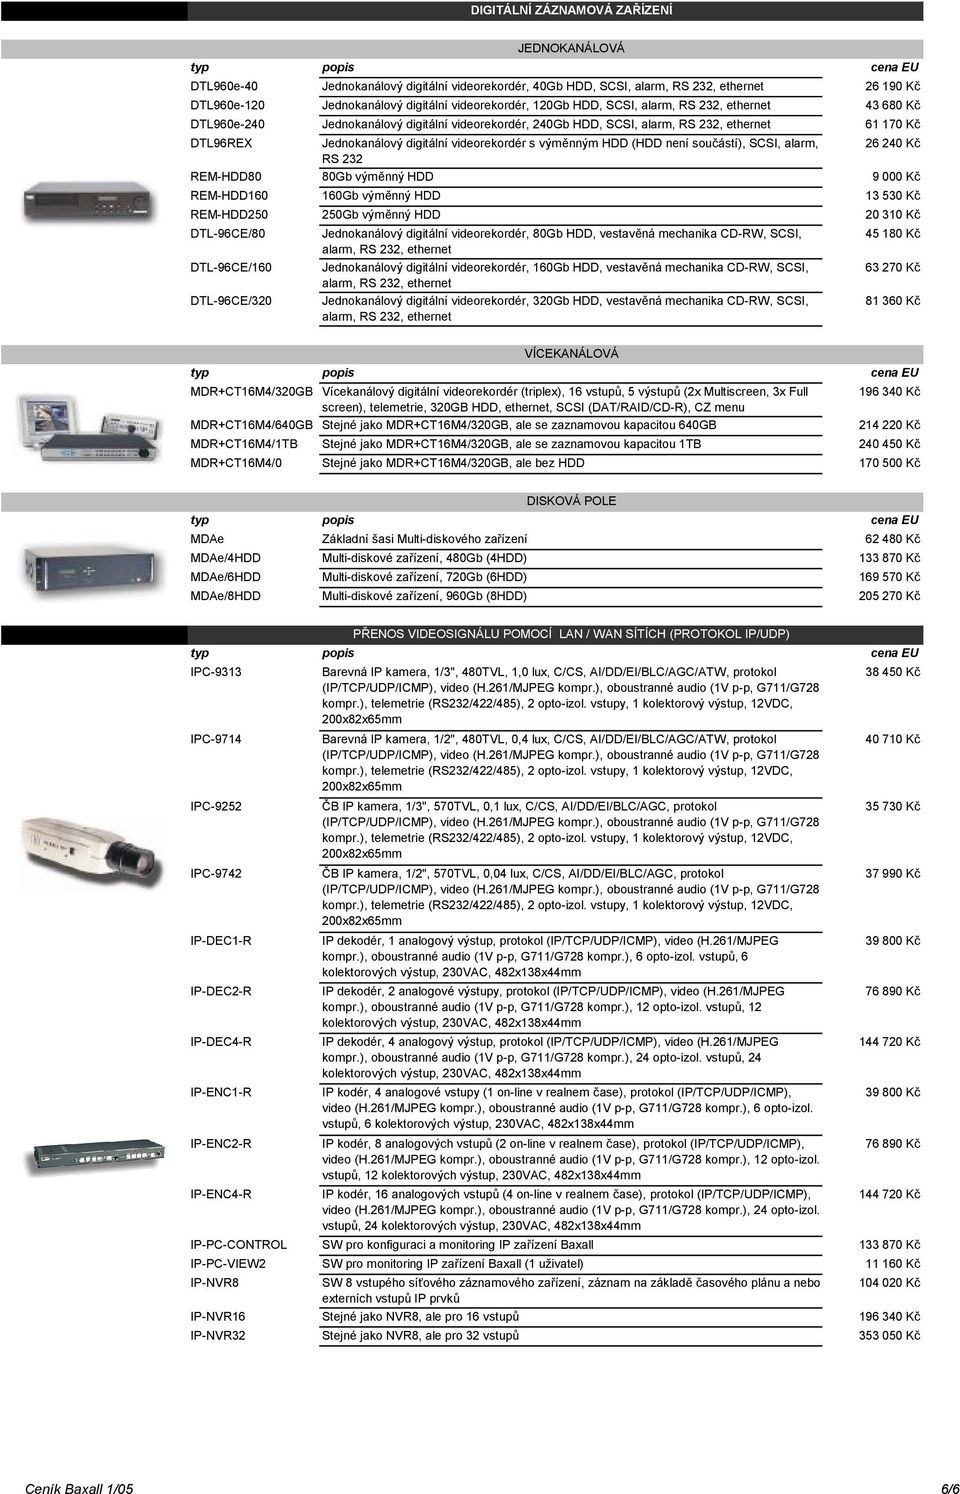 výměnným HDD (HDD není součástí), SCSI, alarm, 26 240 Kč RS 232 REM-HDD80 80Gb výměnný HDD 9 000 Kč REM-HDD160 160Gb výměnný HDD 13 530 Kč REM-HDD250 250Gb výměnný HDD 20 310 Kč DTL-96CE/80